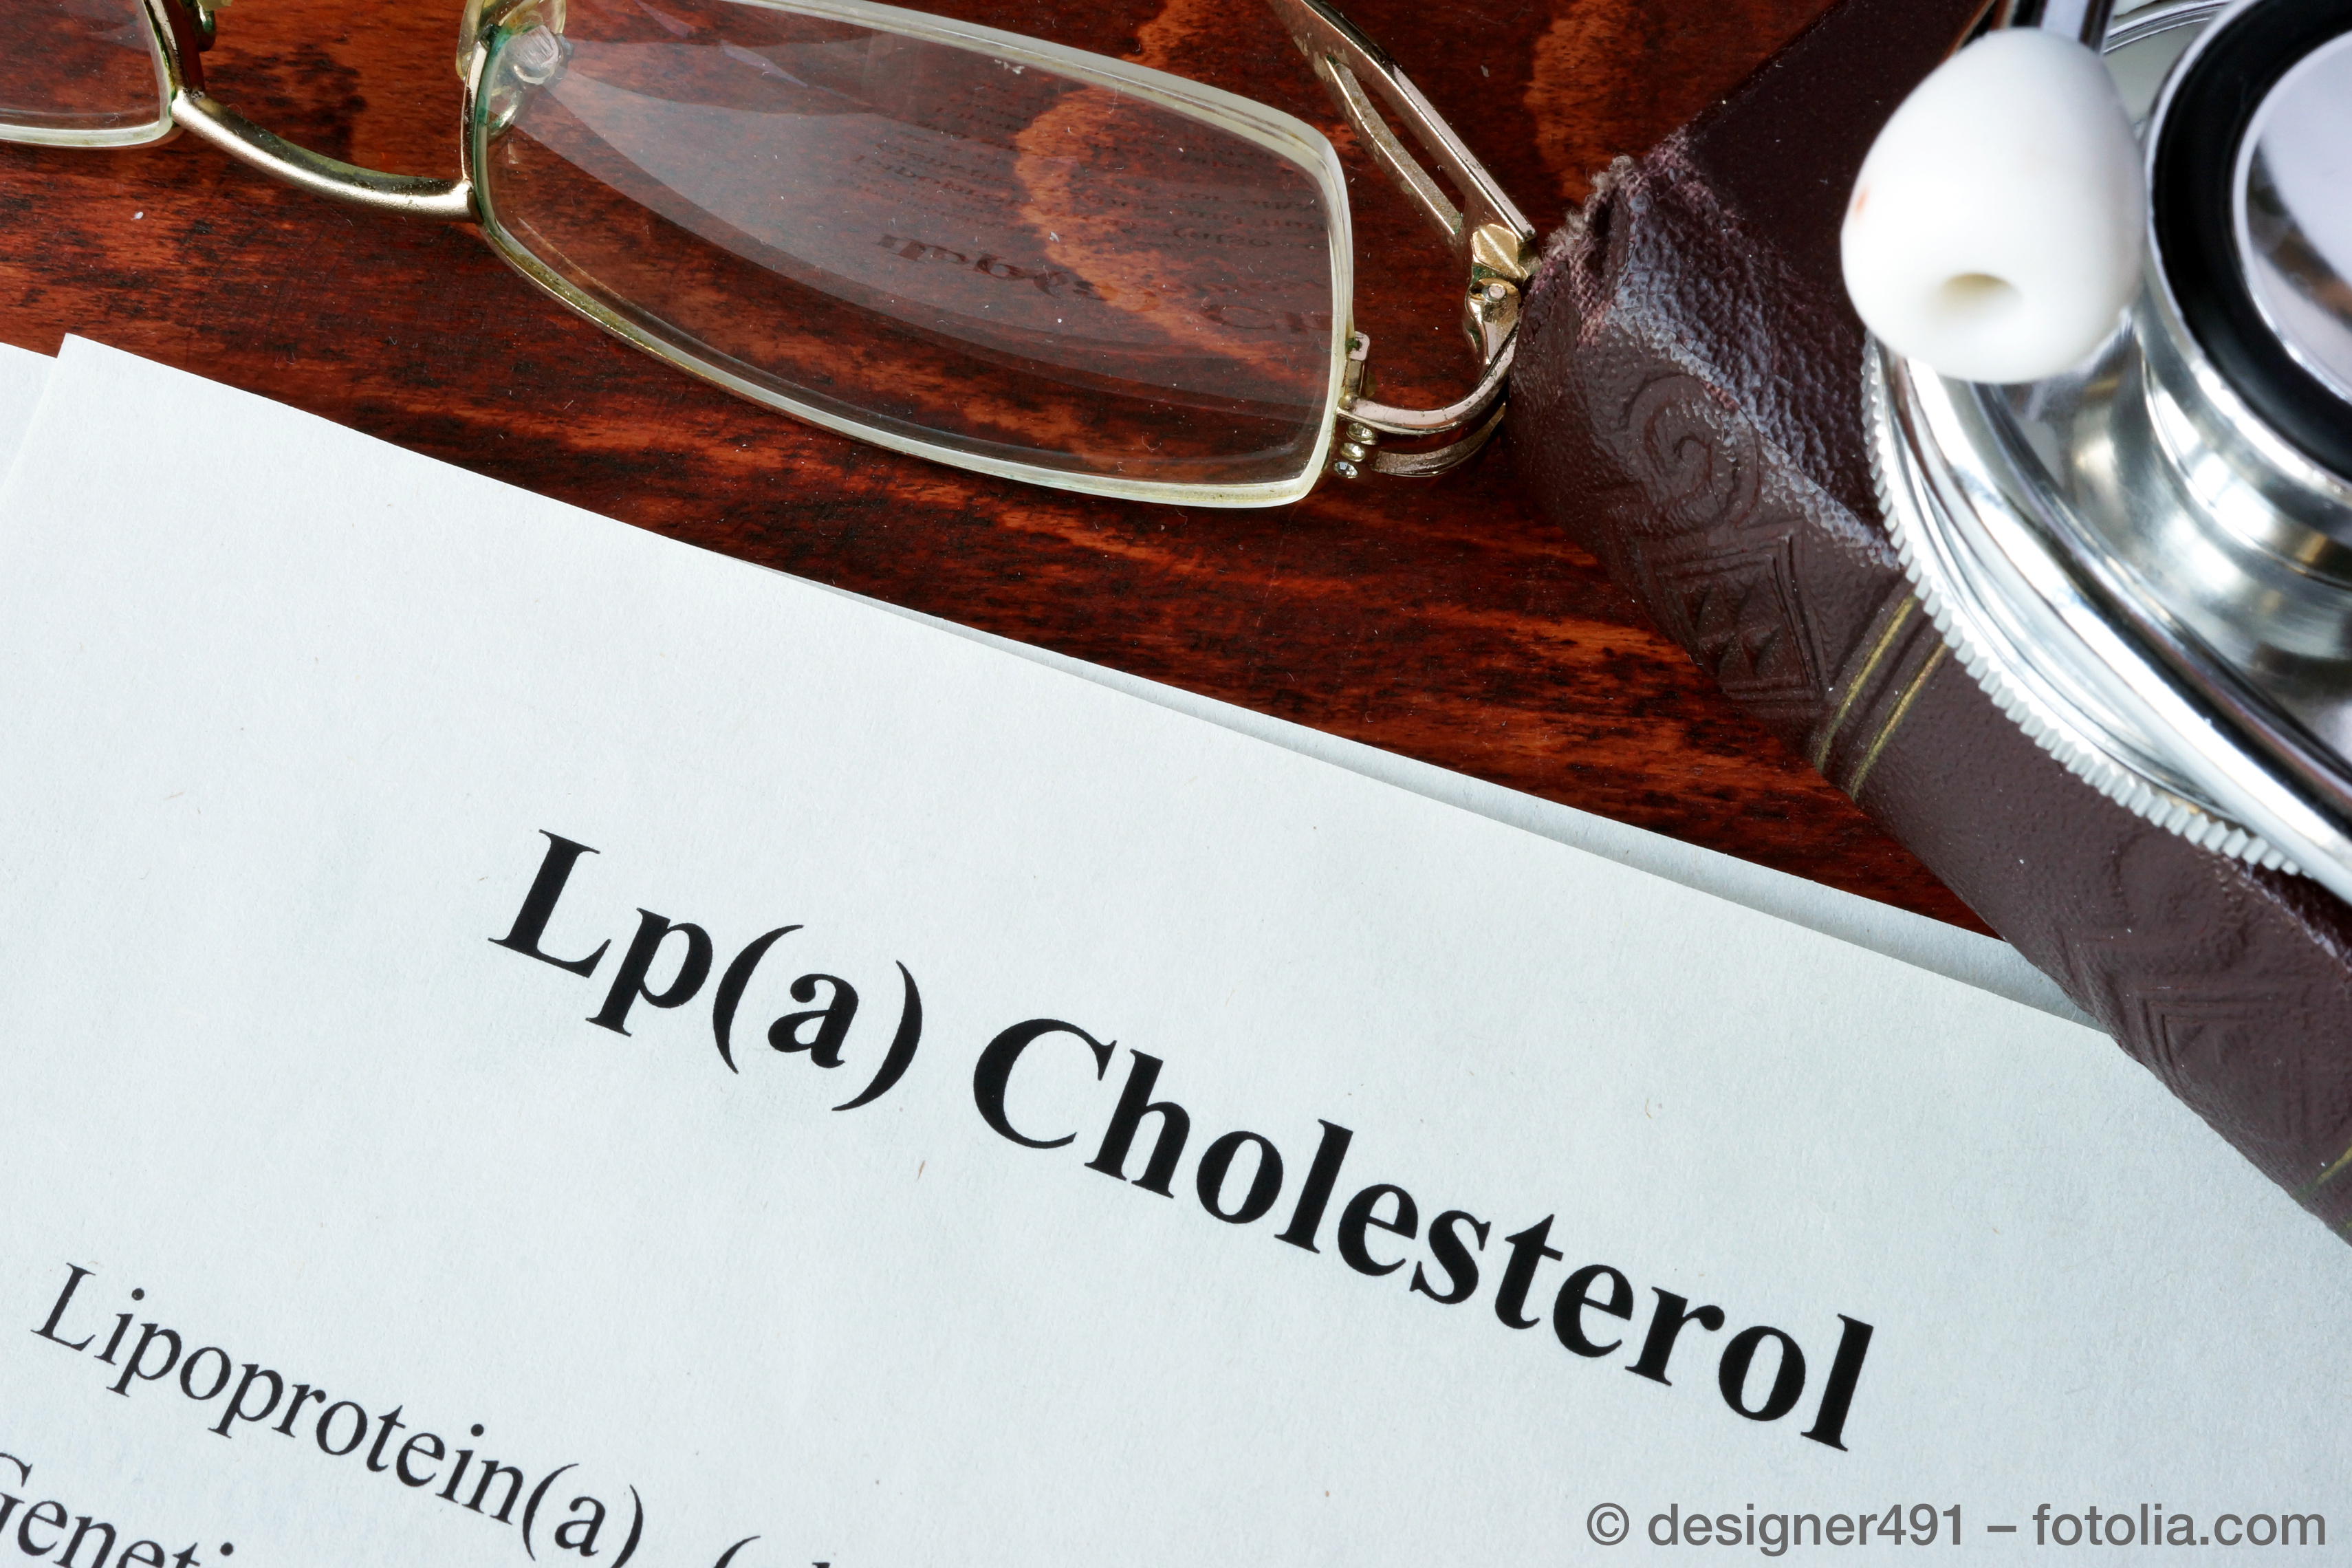 Hohes Lipoprotein(a) ist ein Risikofaktor für Herzinfarkt und Schlaganfall